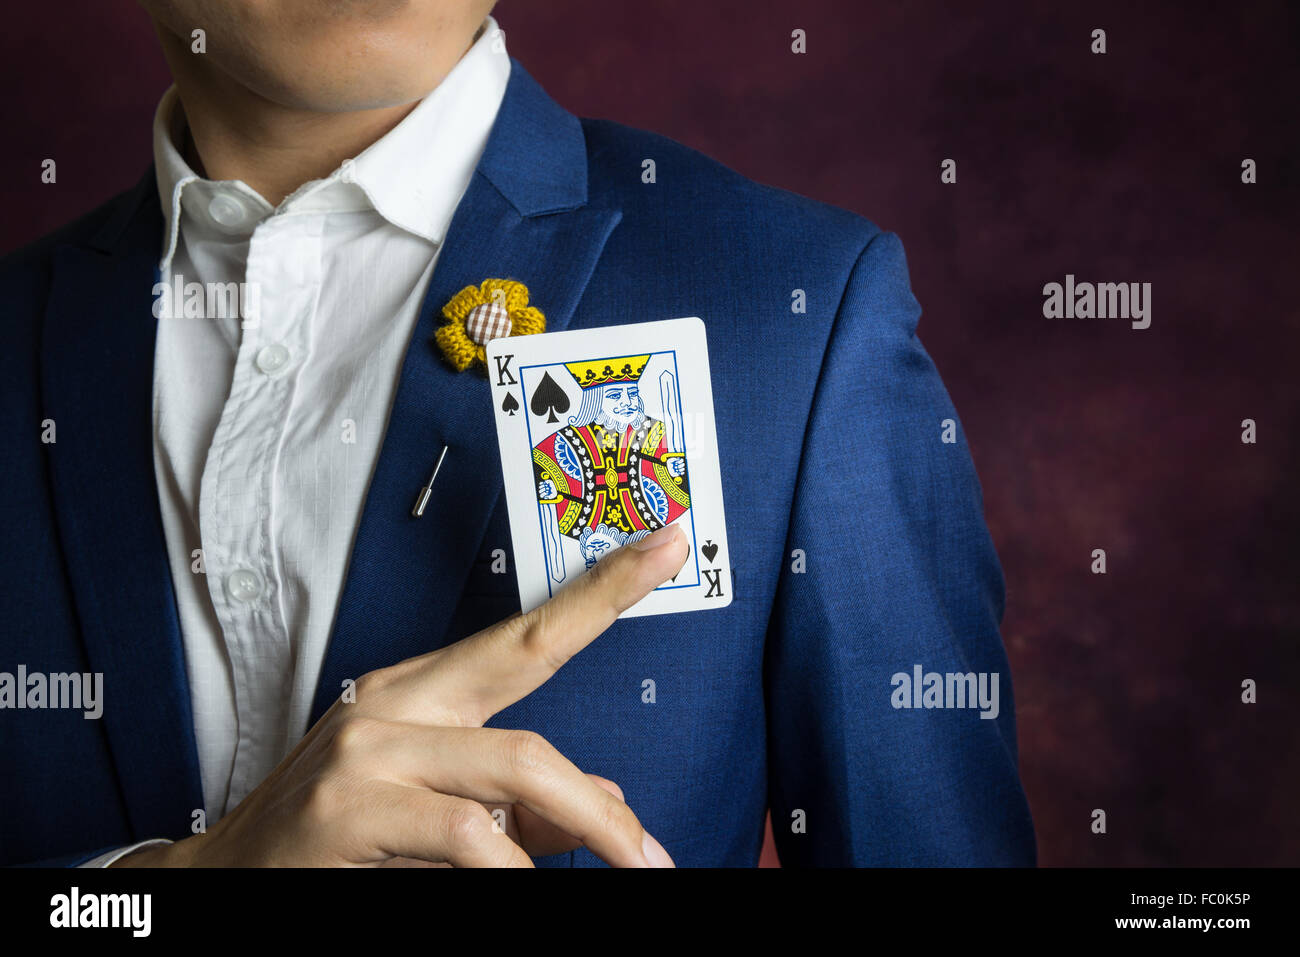 Homme portant un costume bleu, veste Broche fleur et, tenant le roi pique avec l'index et le majeur, concept casino Banque D'Images